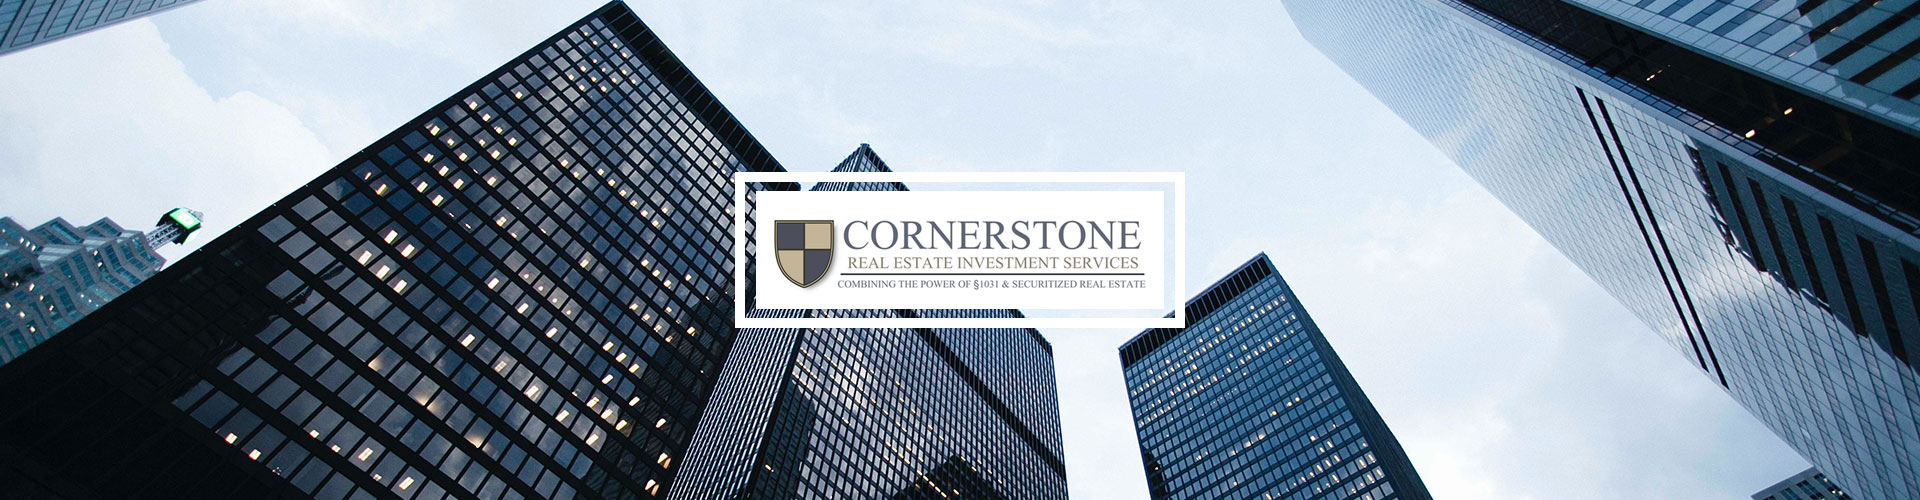 Case Study - Cornerstone Real Estate